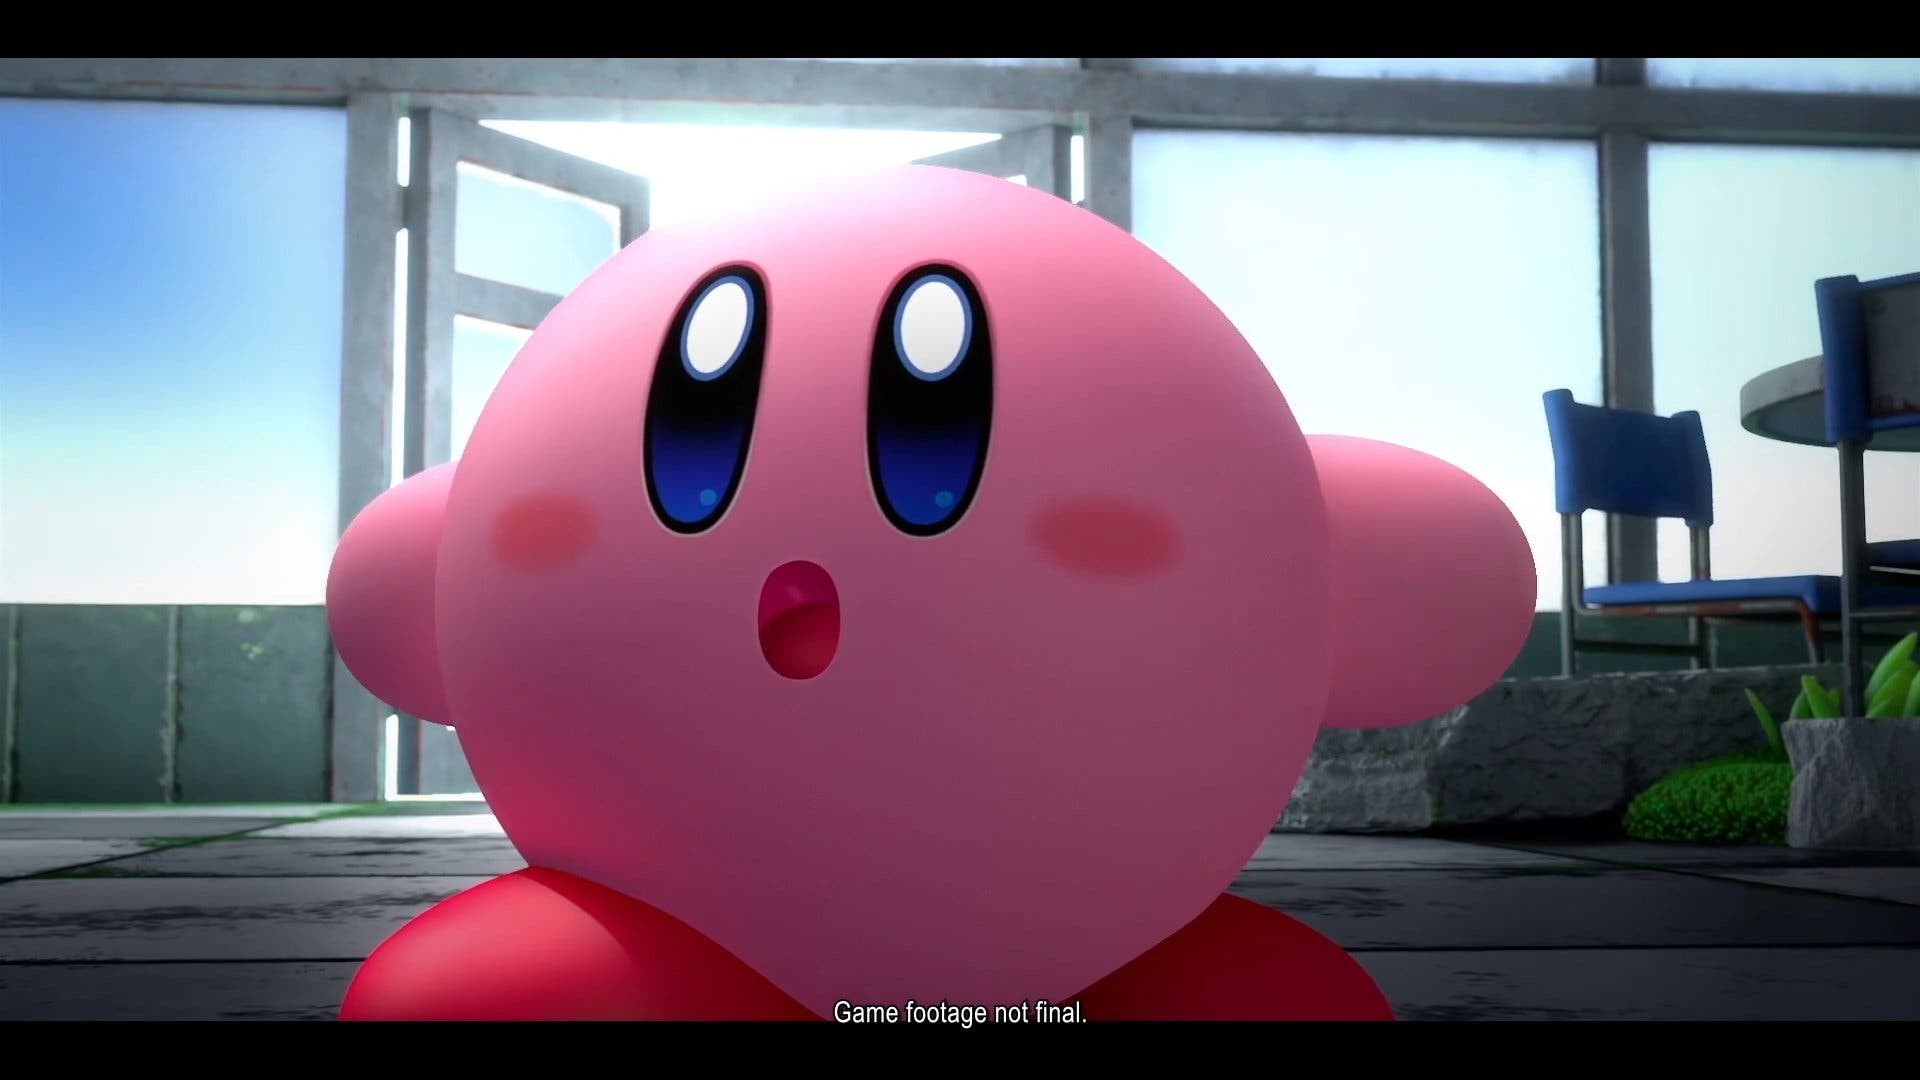 Análisis] Kirby y la tierra olvidada para Nintendo Switch - Nintenderos